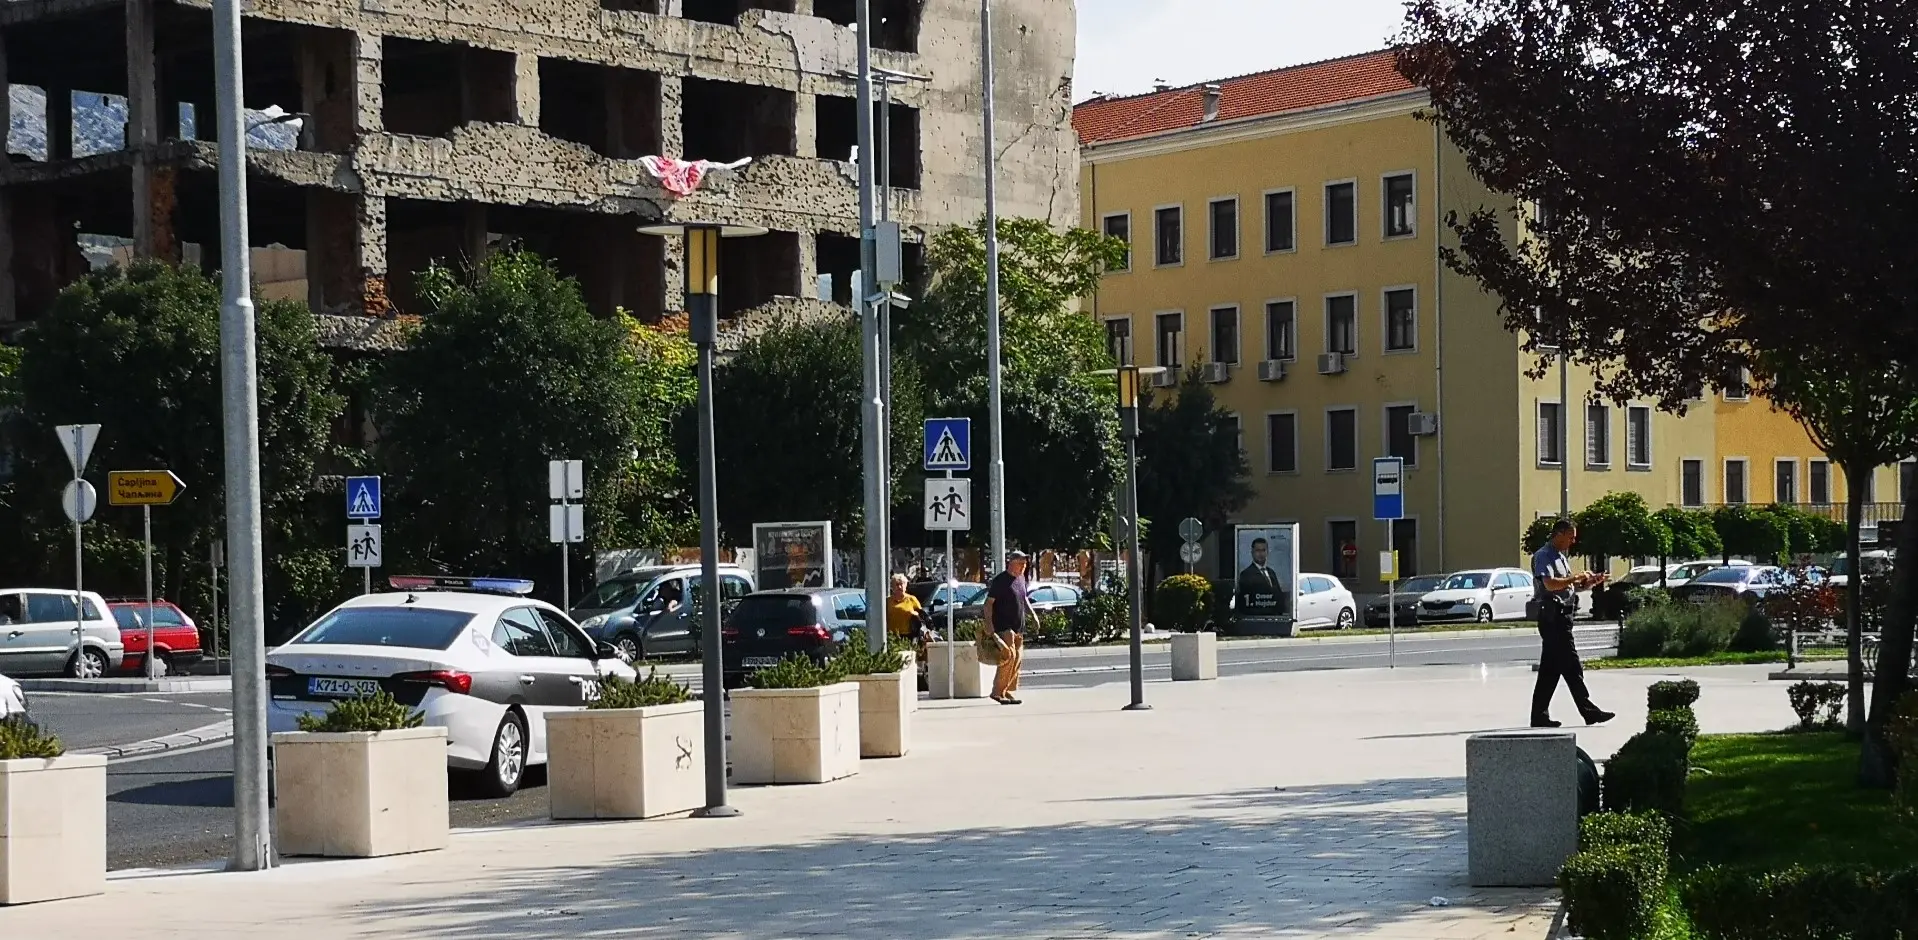 Muškarac i žena iz Sarajeva iz vatrenog oružja pucali po Mostaru, policija ih uhapsila